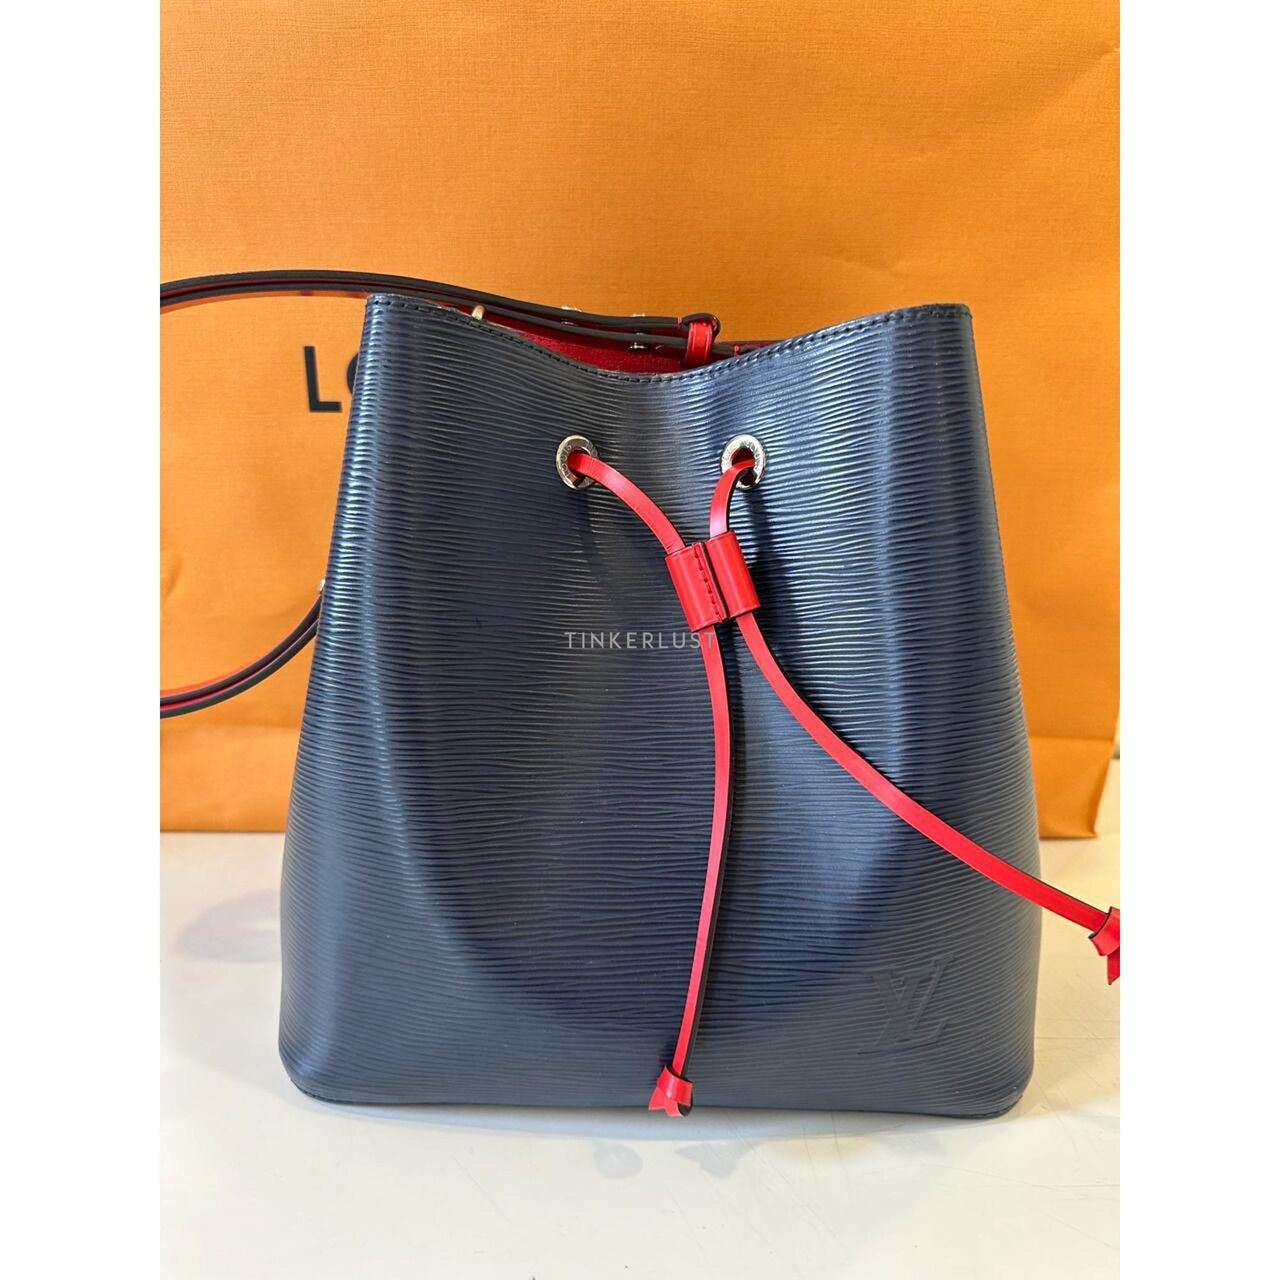 Louis Vuitton Noe Epi Leather Navy & Red Shoulder Bag